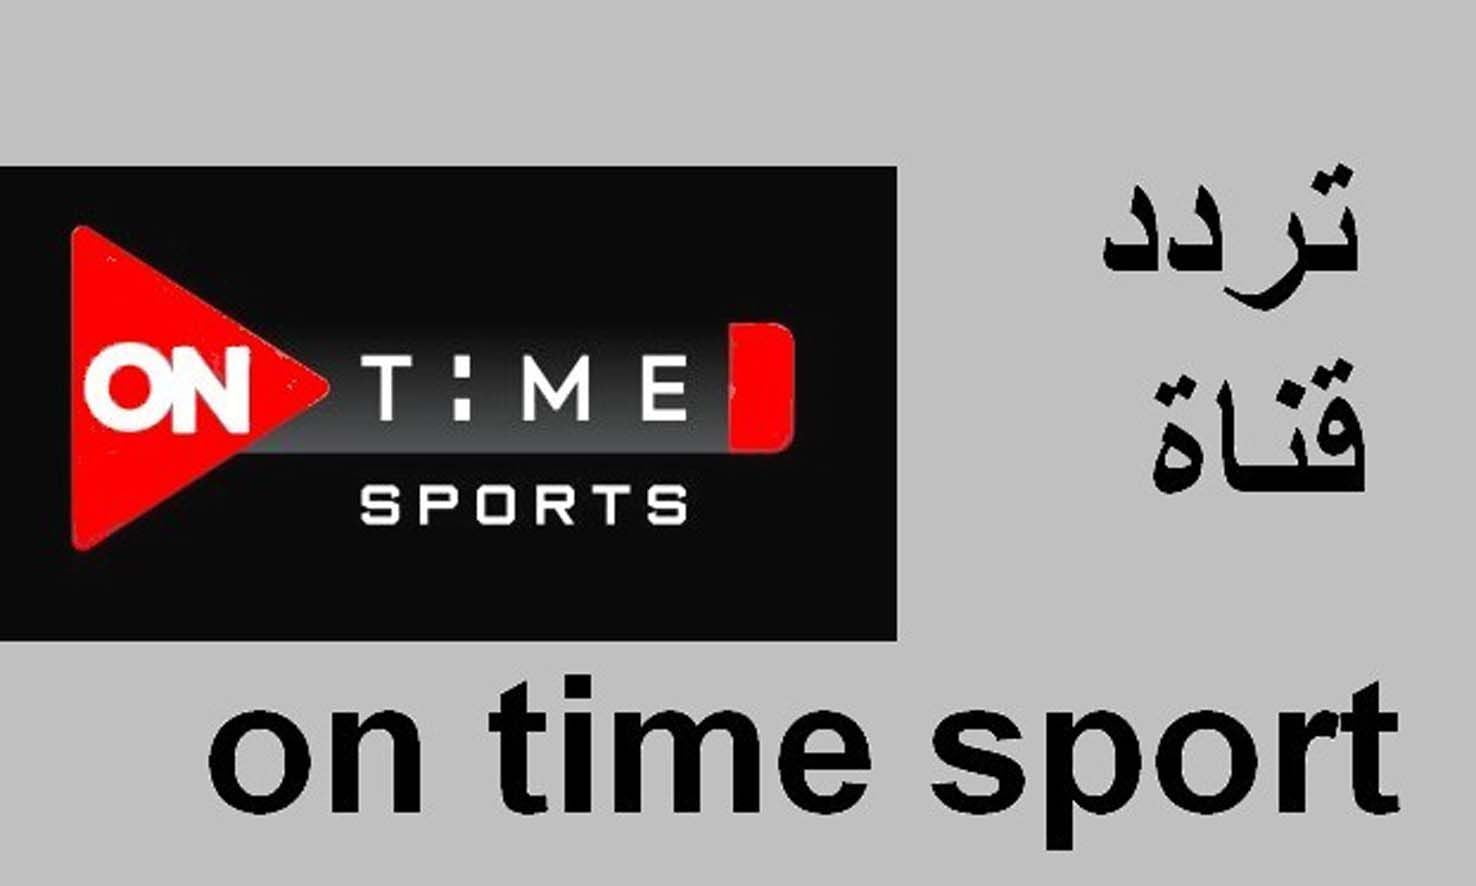 تردد قناة اون تايم سبورت الجديد On Time Sport الناقلة لدوري أبطال إفريقيا 2022